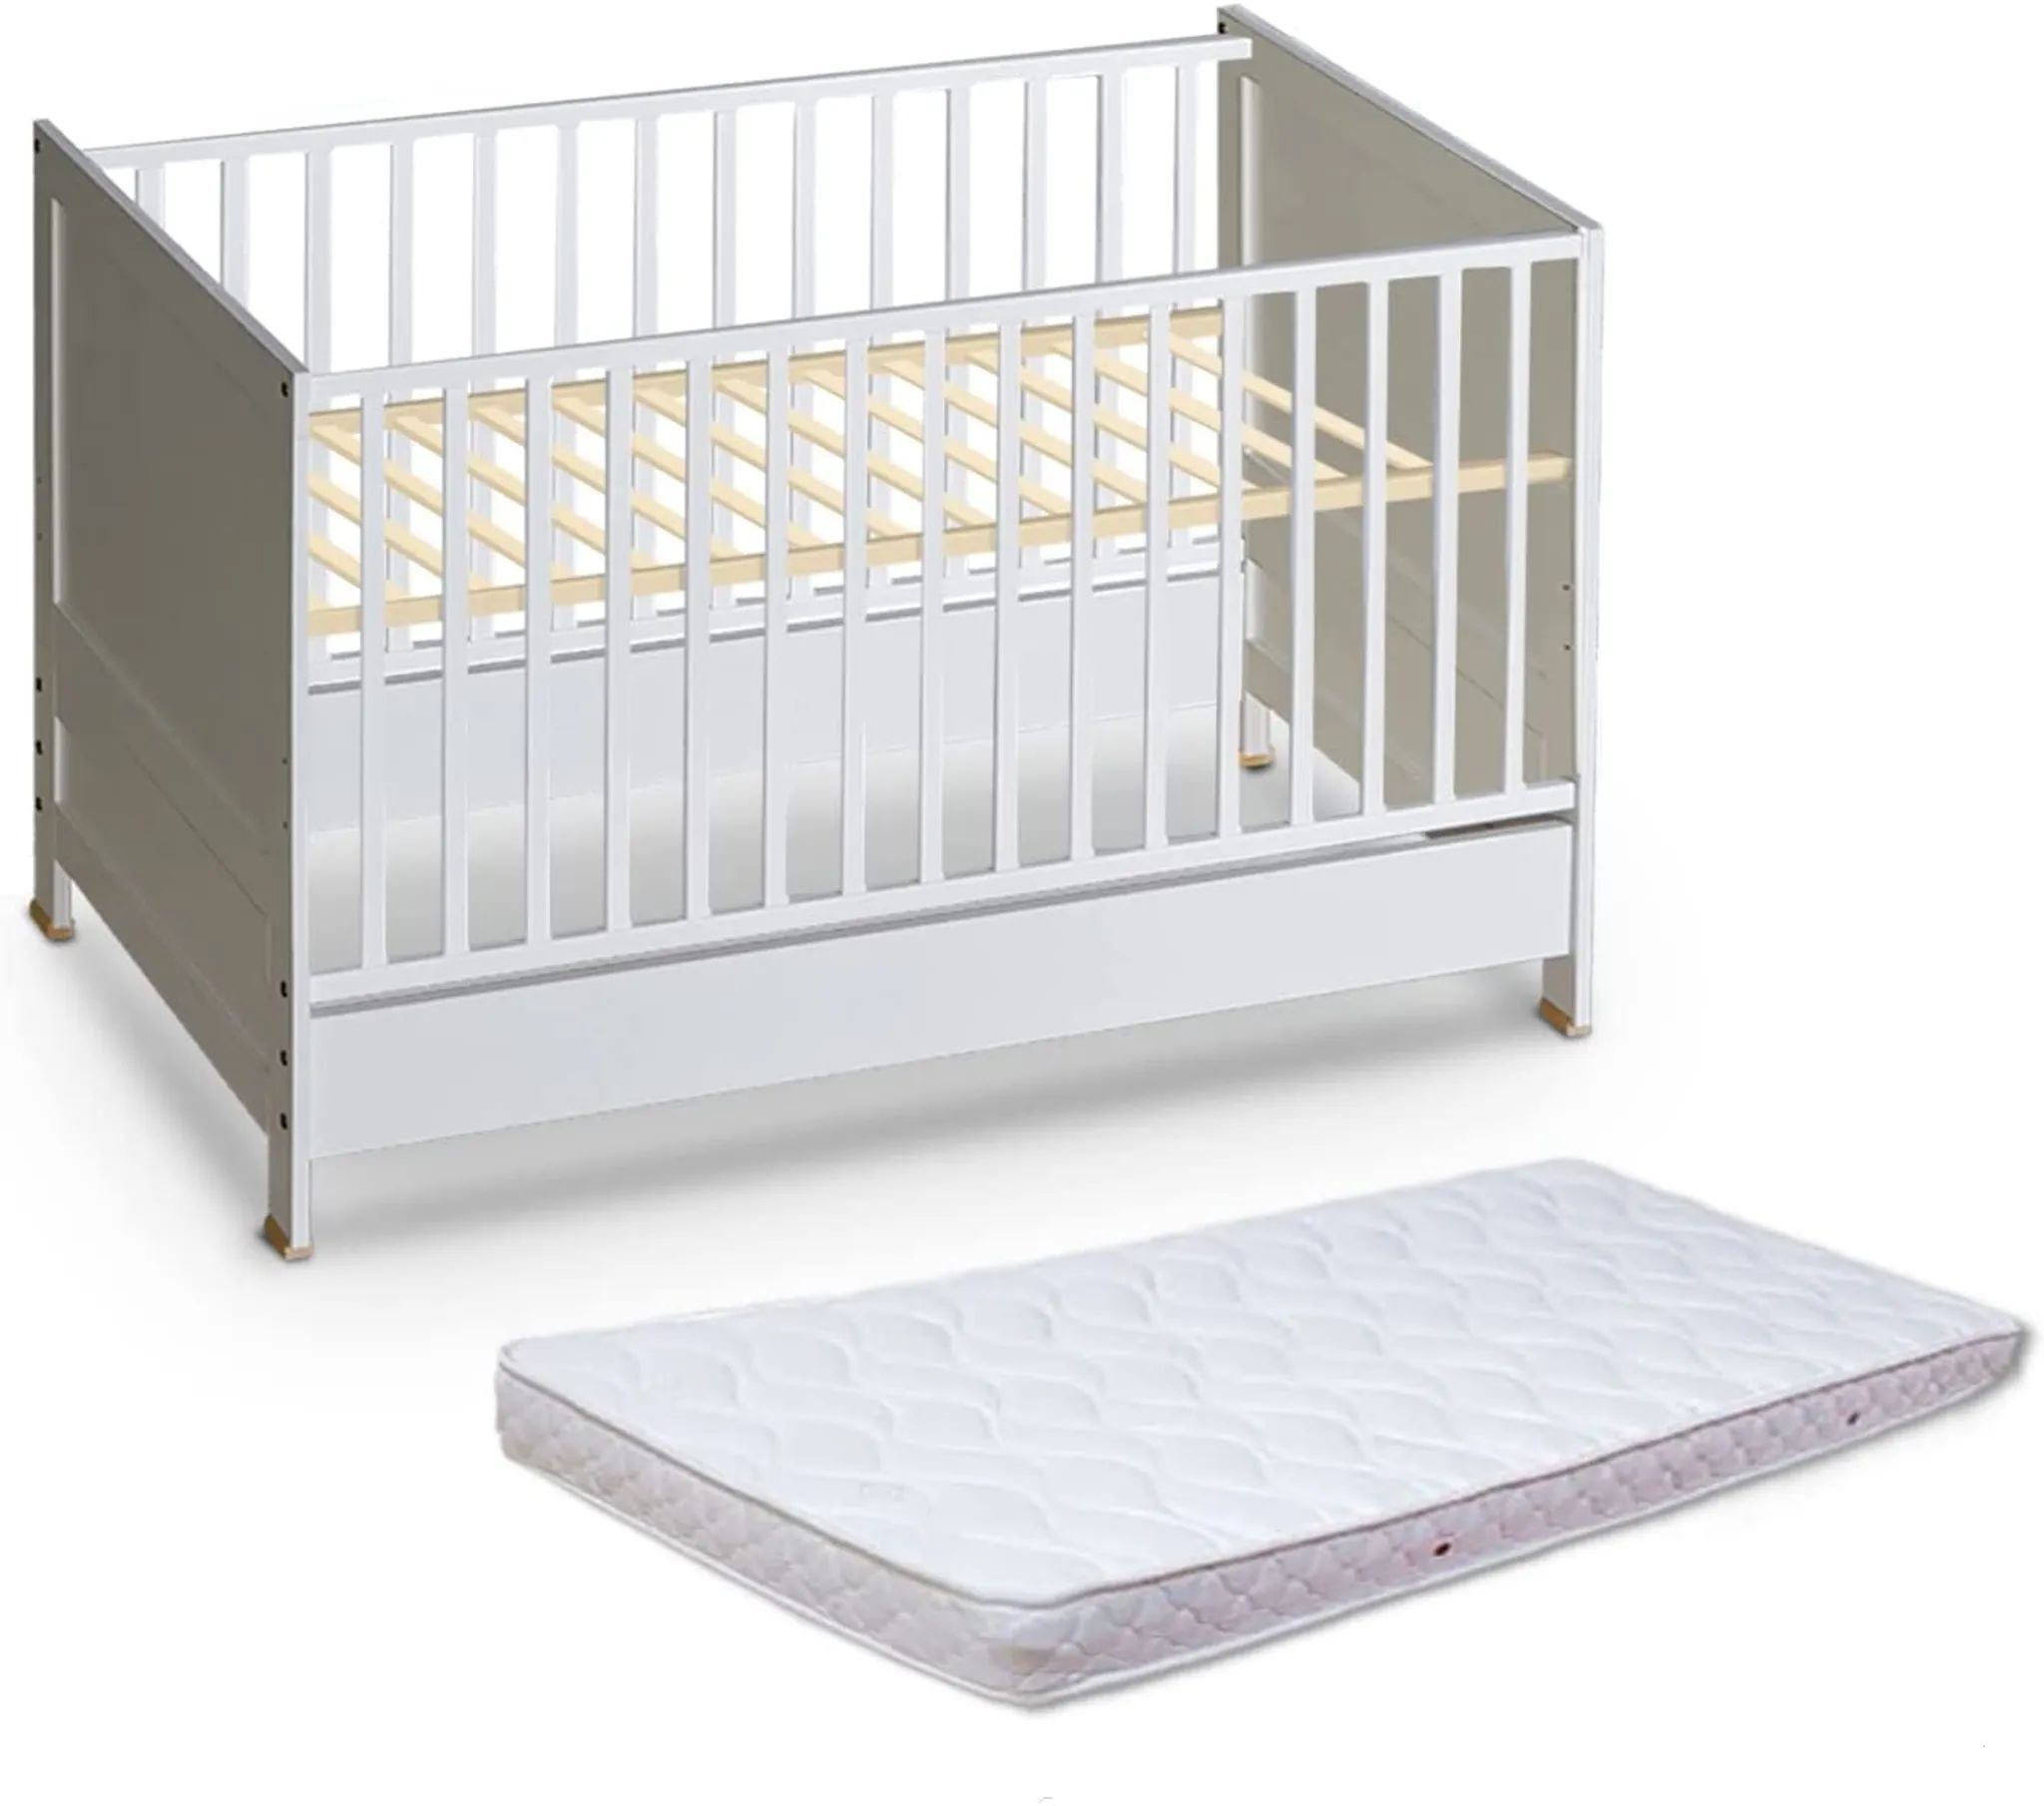 ATB MEBLE Babybett mit Matratze , Beistellbett Baby , Bett Baby Mitwachsend , Kinderbett umbaubar , 4 Ebenen der Matratzenhöhe  , 140×70 Weiß